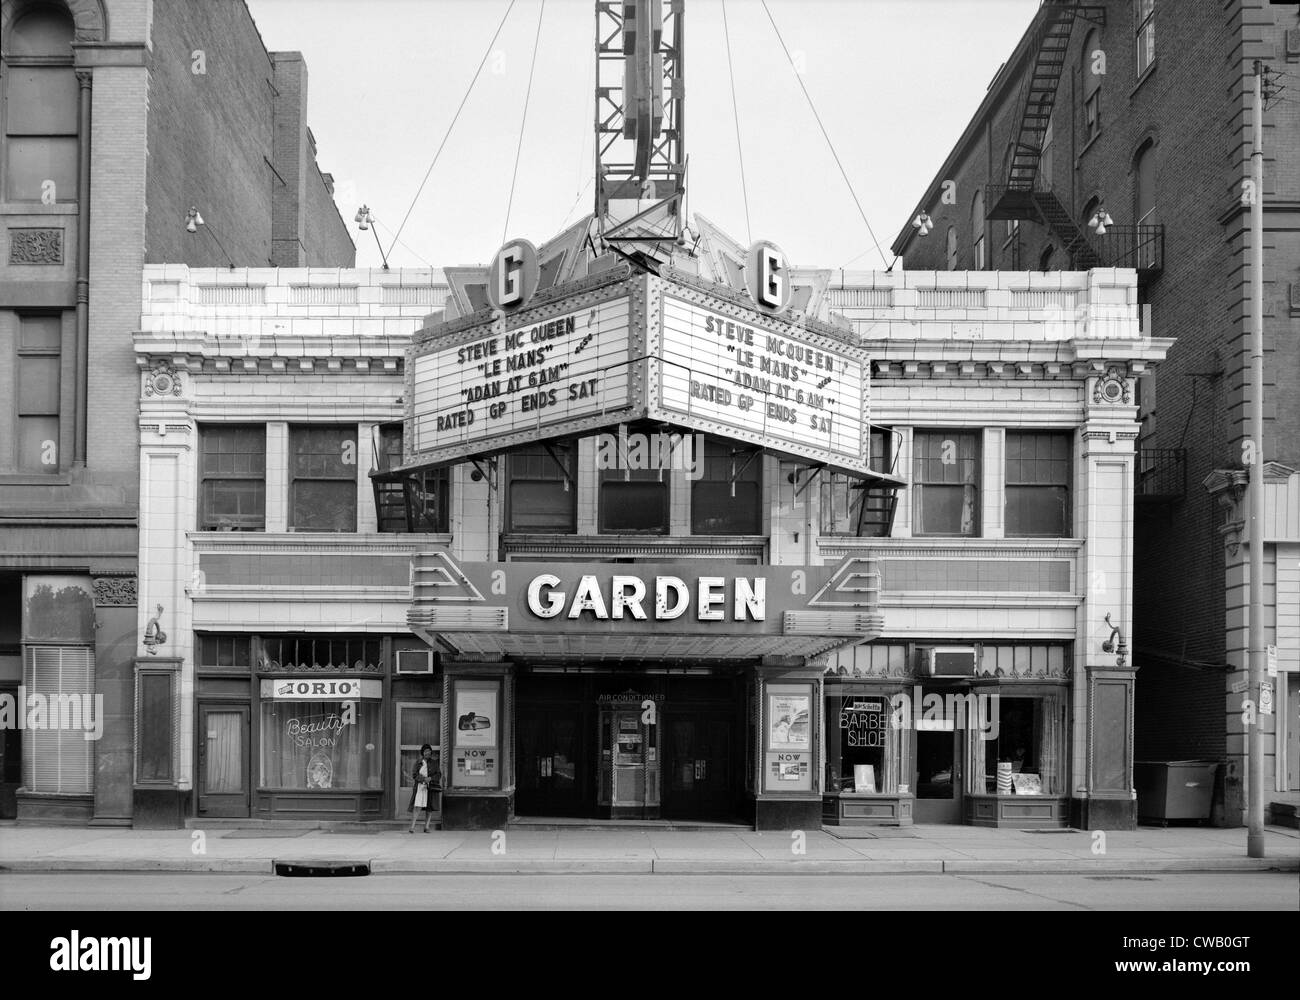 Kinos, The Garden Theater, LE MANS, zeigen Darsteller Steve McQueen, Baujahr 1927, 12.10.14, Westen North Avenue, Stockfoto